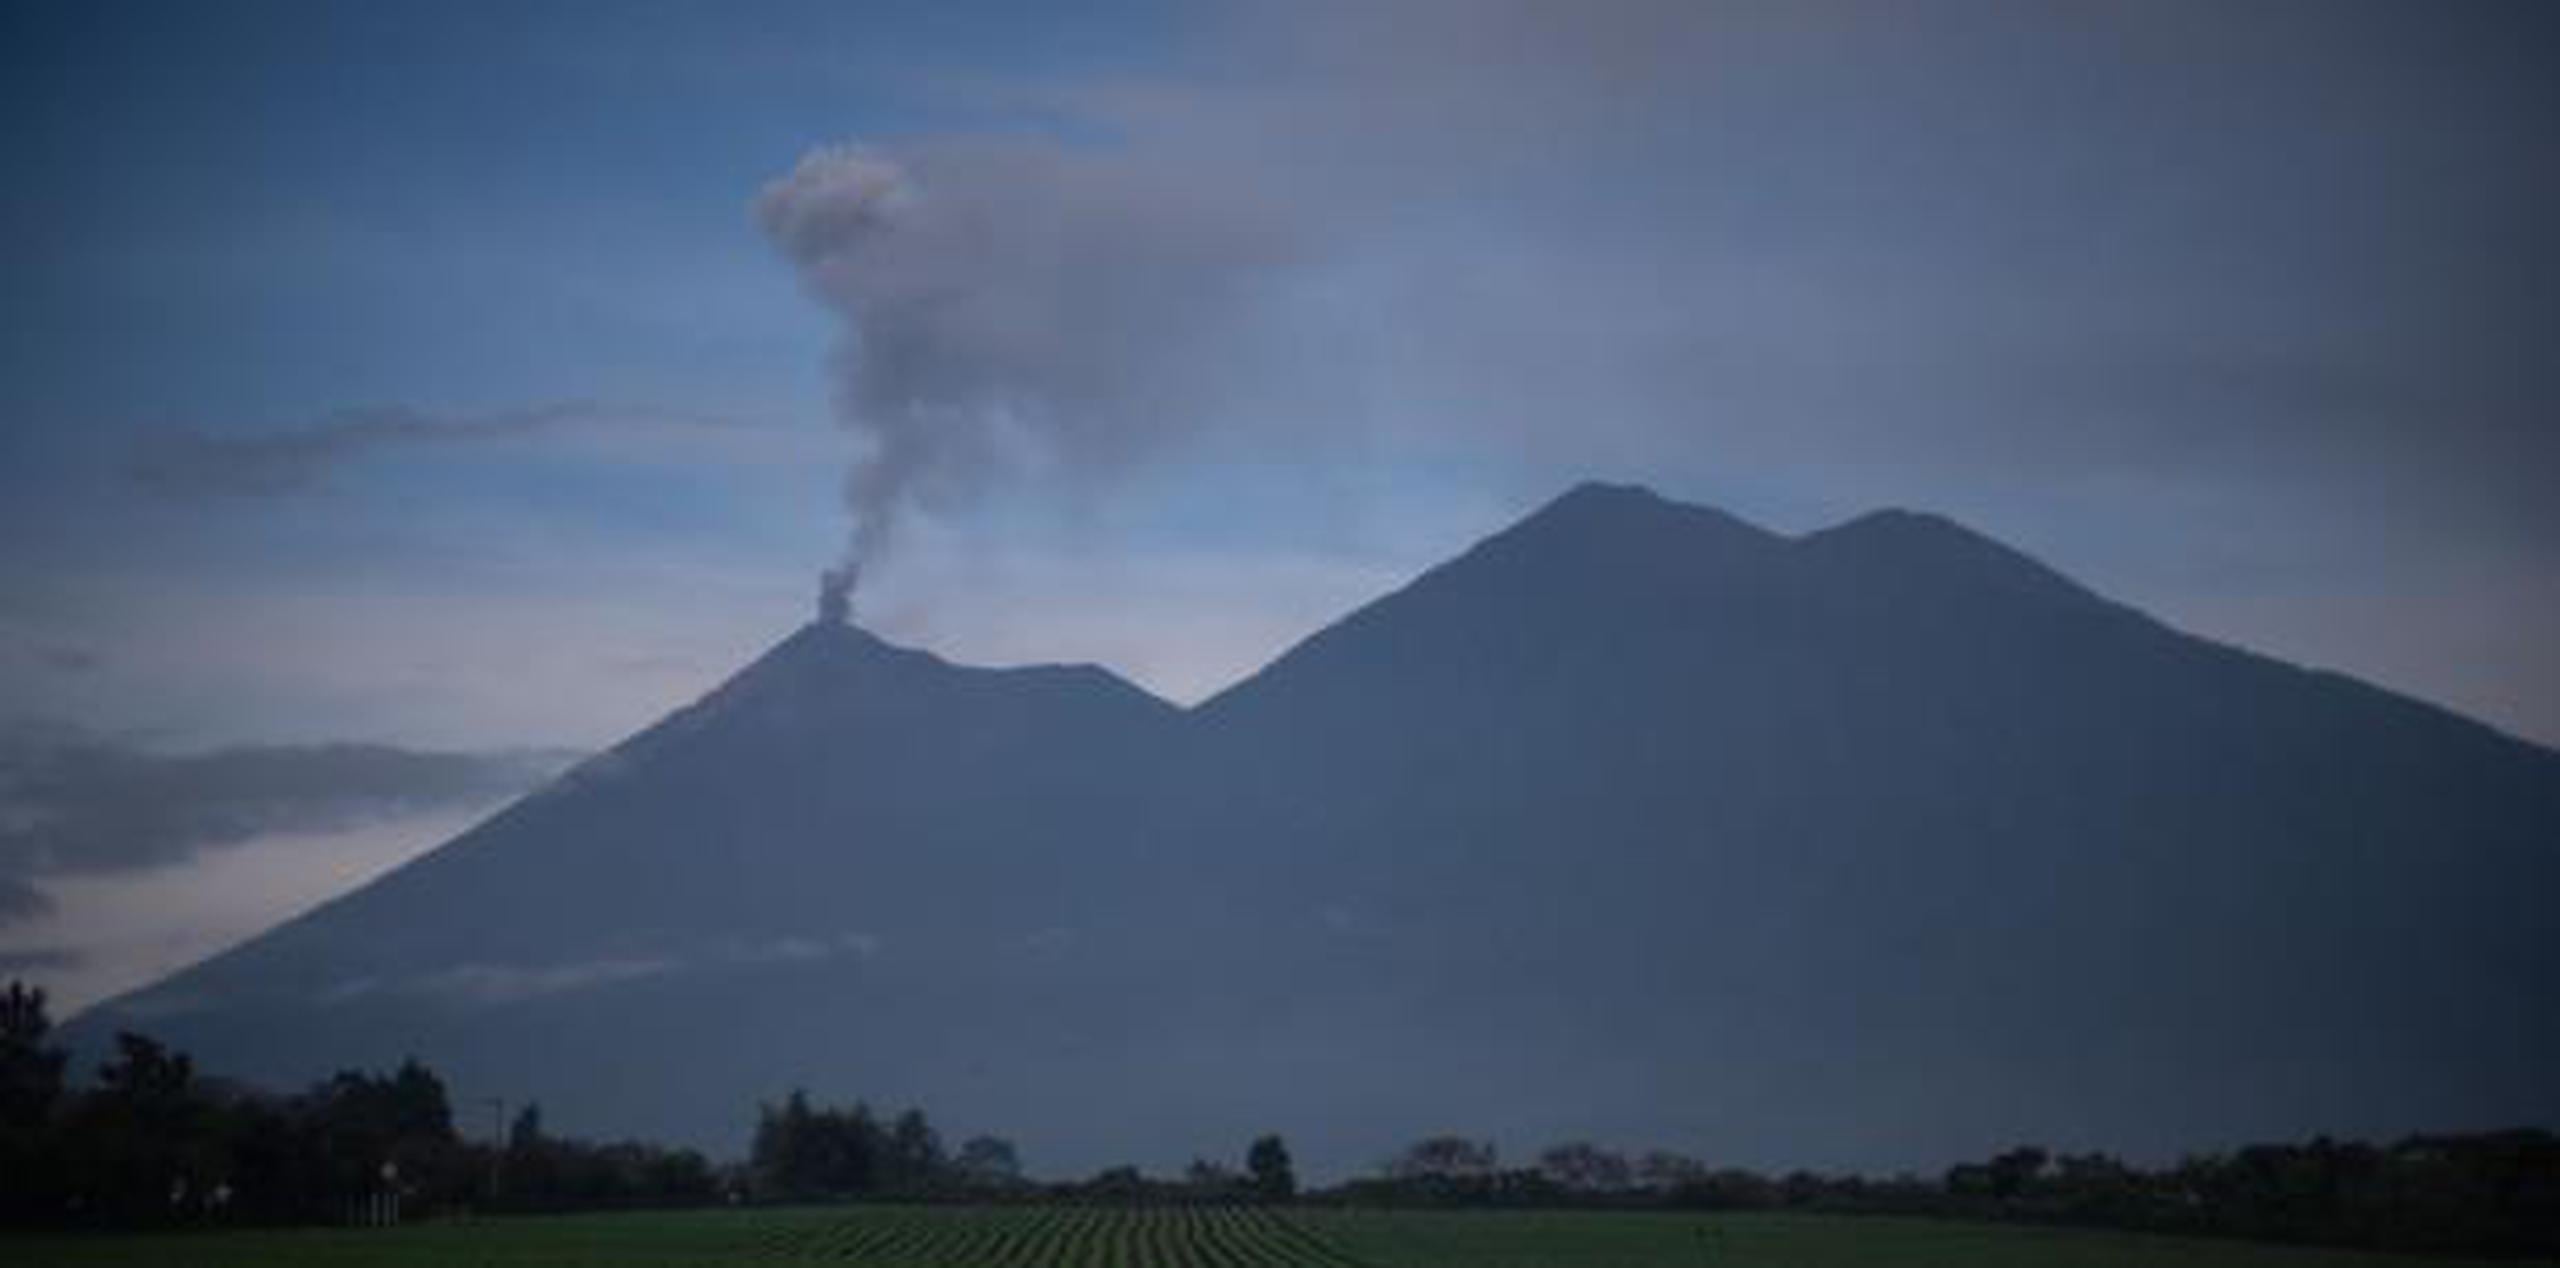 El pasado 3 de junio el cono hizo una violenta erupción que deja al menos 190 muertos, 238 desaparecidos y más de 1.7 millones de afectados, de acuerdo a las cifras oficiales. (EFE)